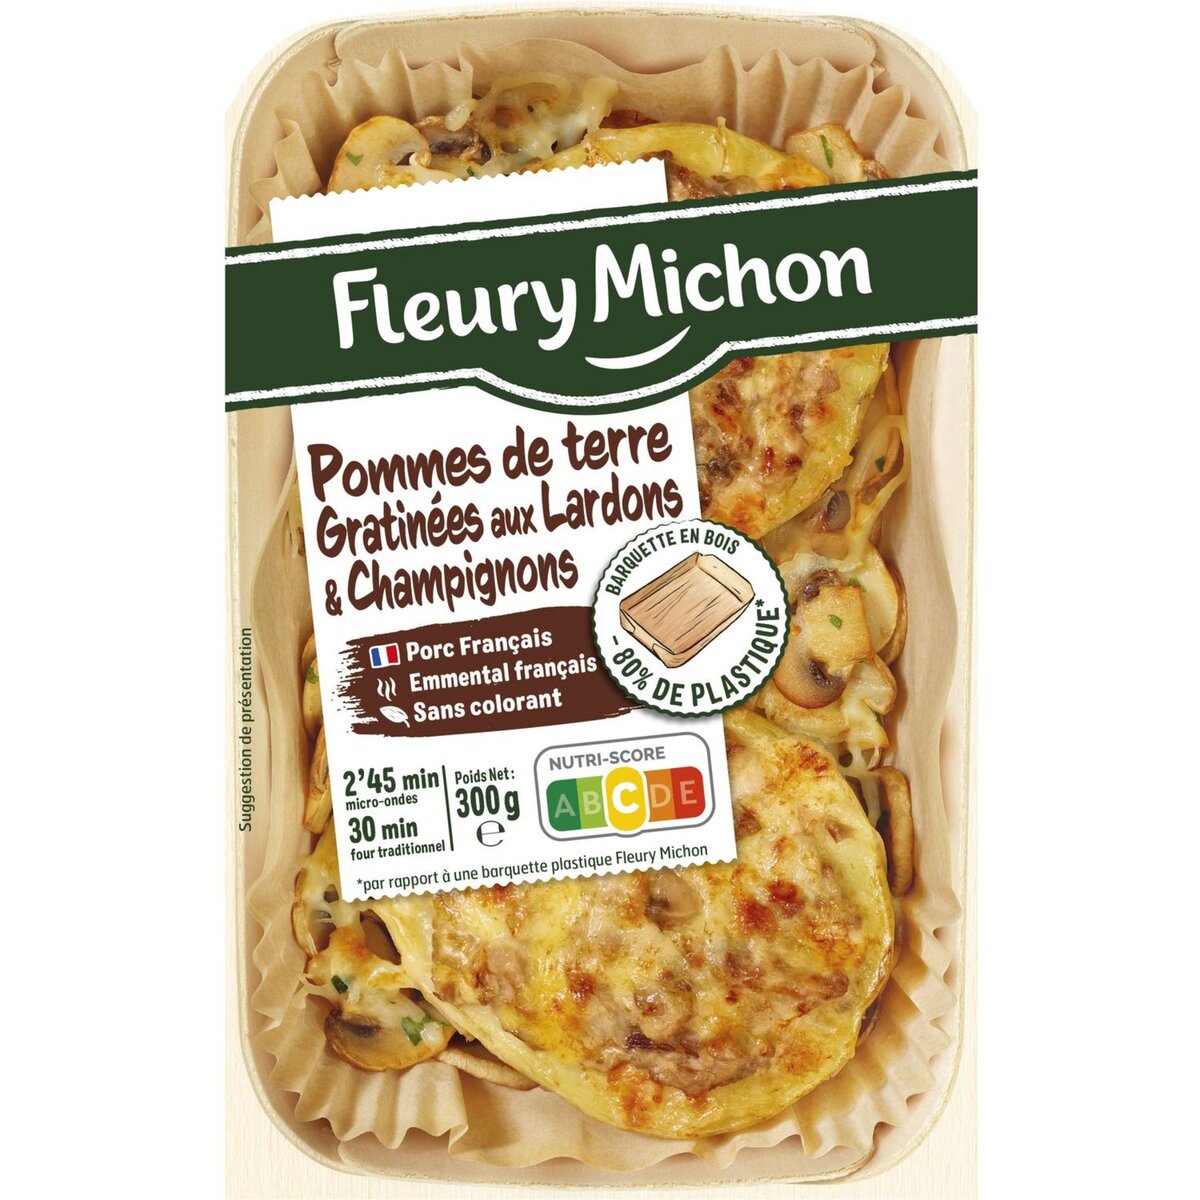 FLEURY MICHON Fleury Michon Pommes de terre gratinées aux lardons champignons 300g 1 portion 300g